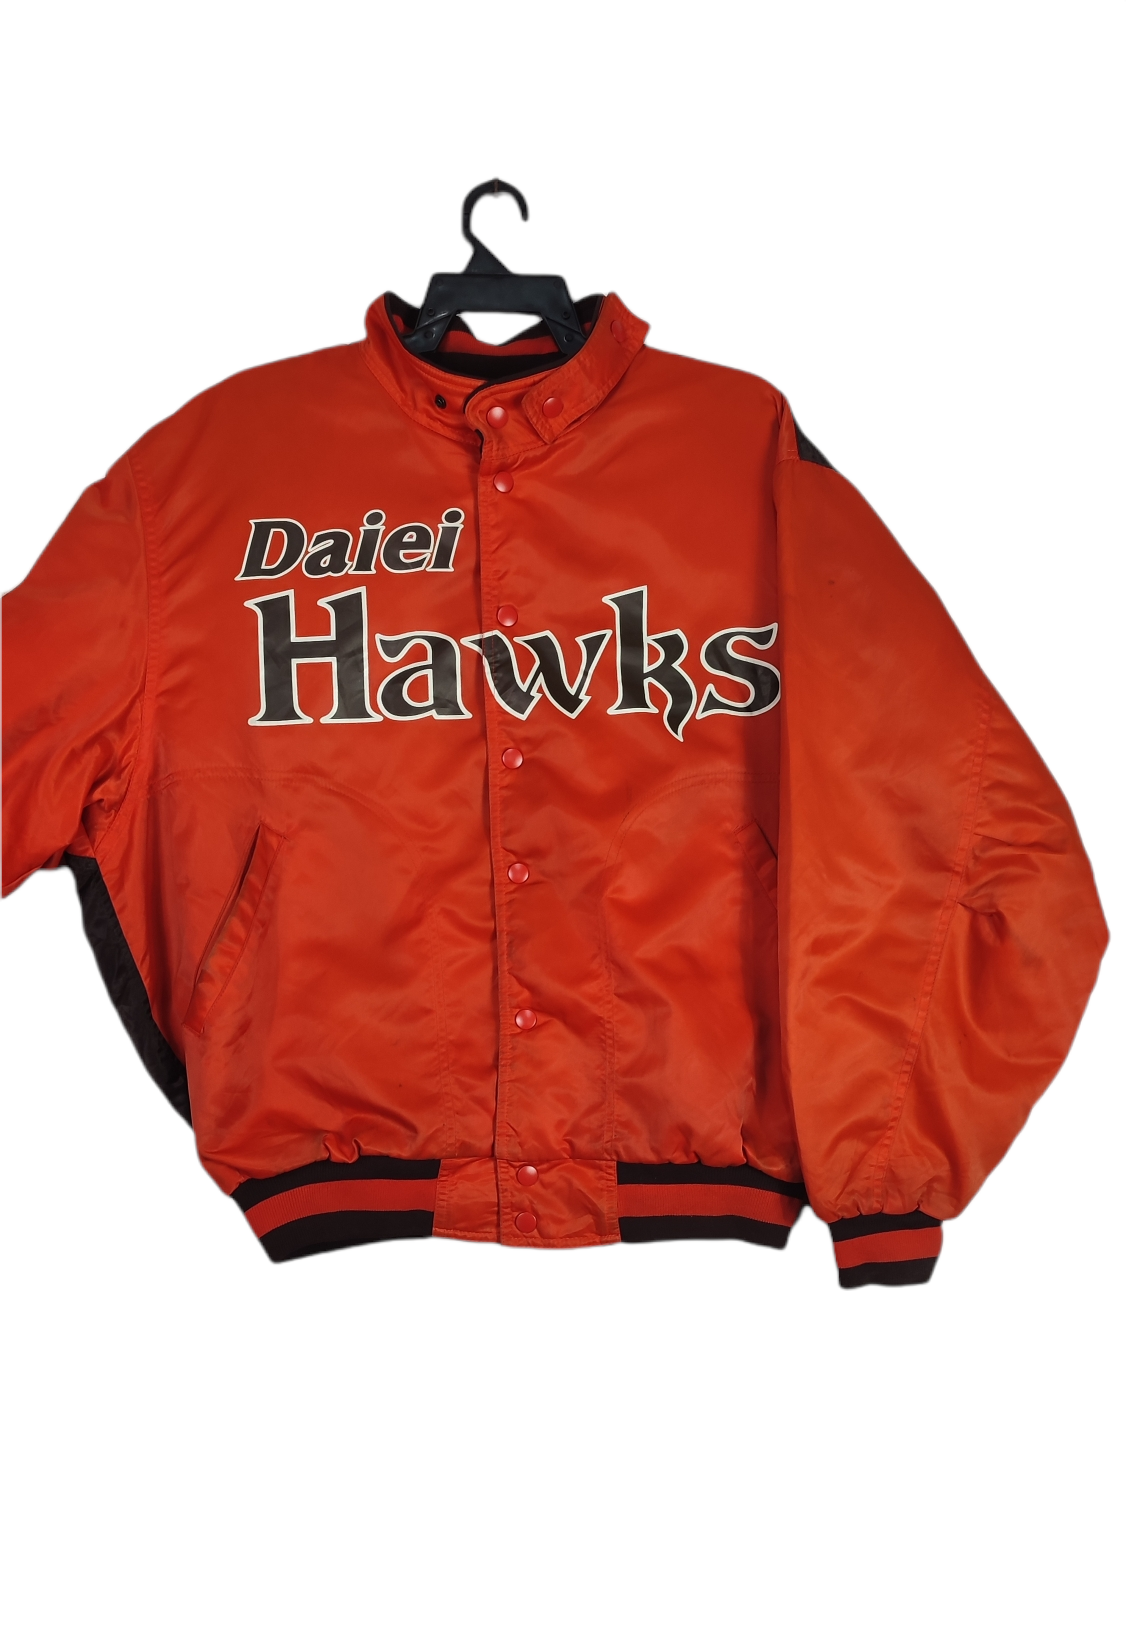 Vintage Daiei Hawks Bomber Jacket - 3